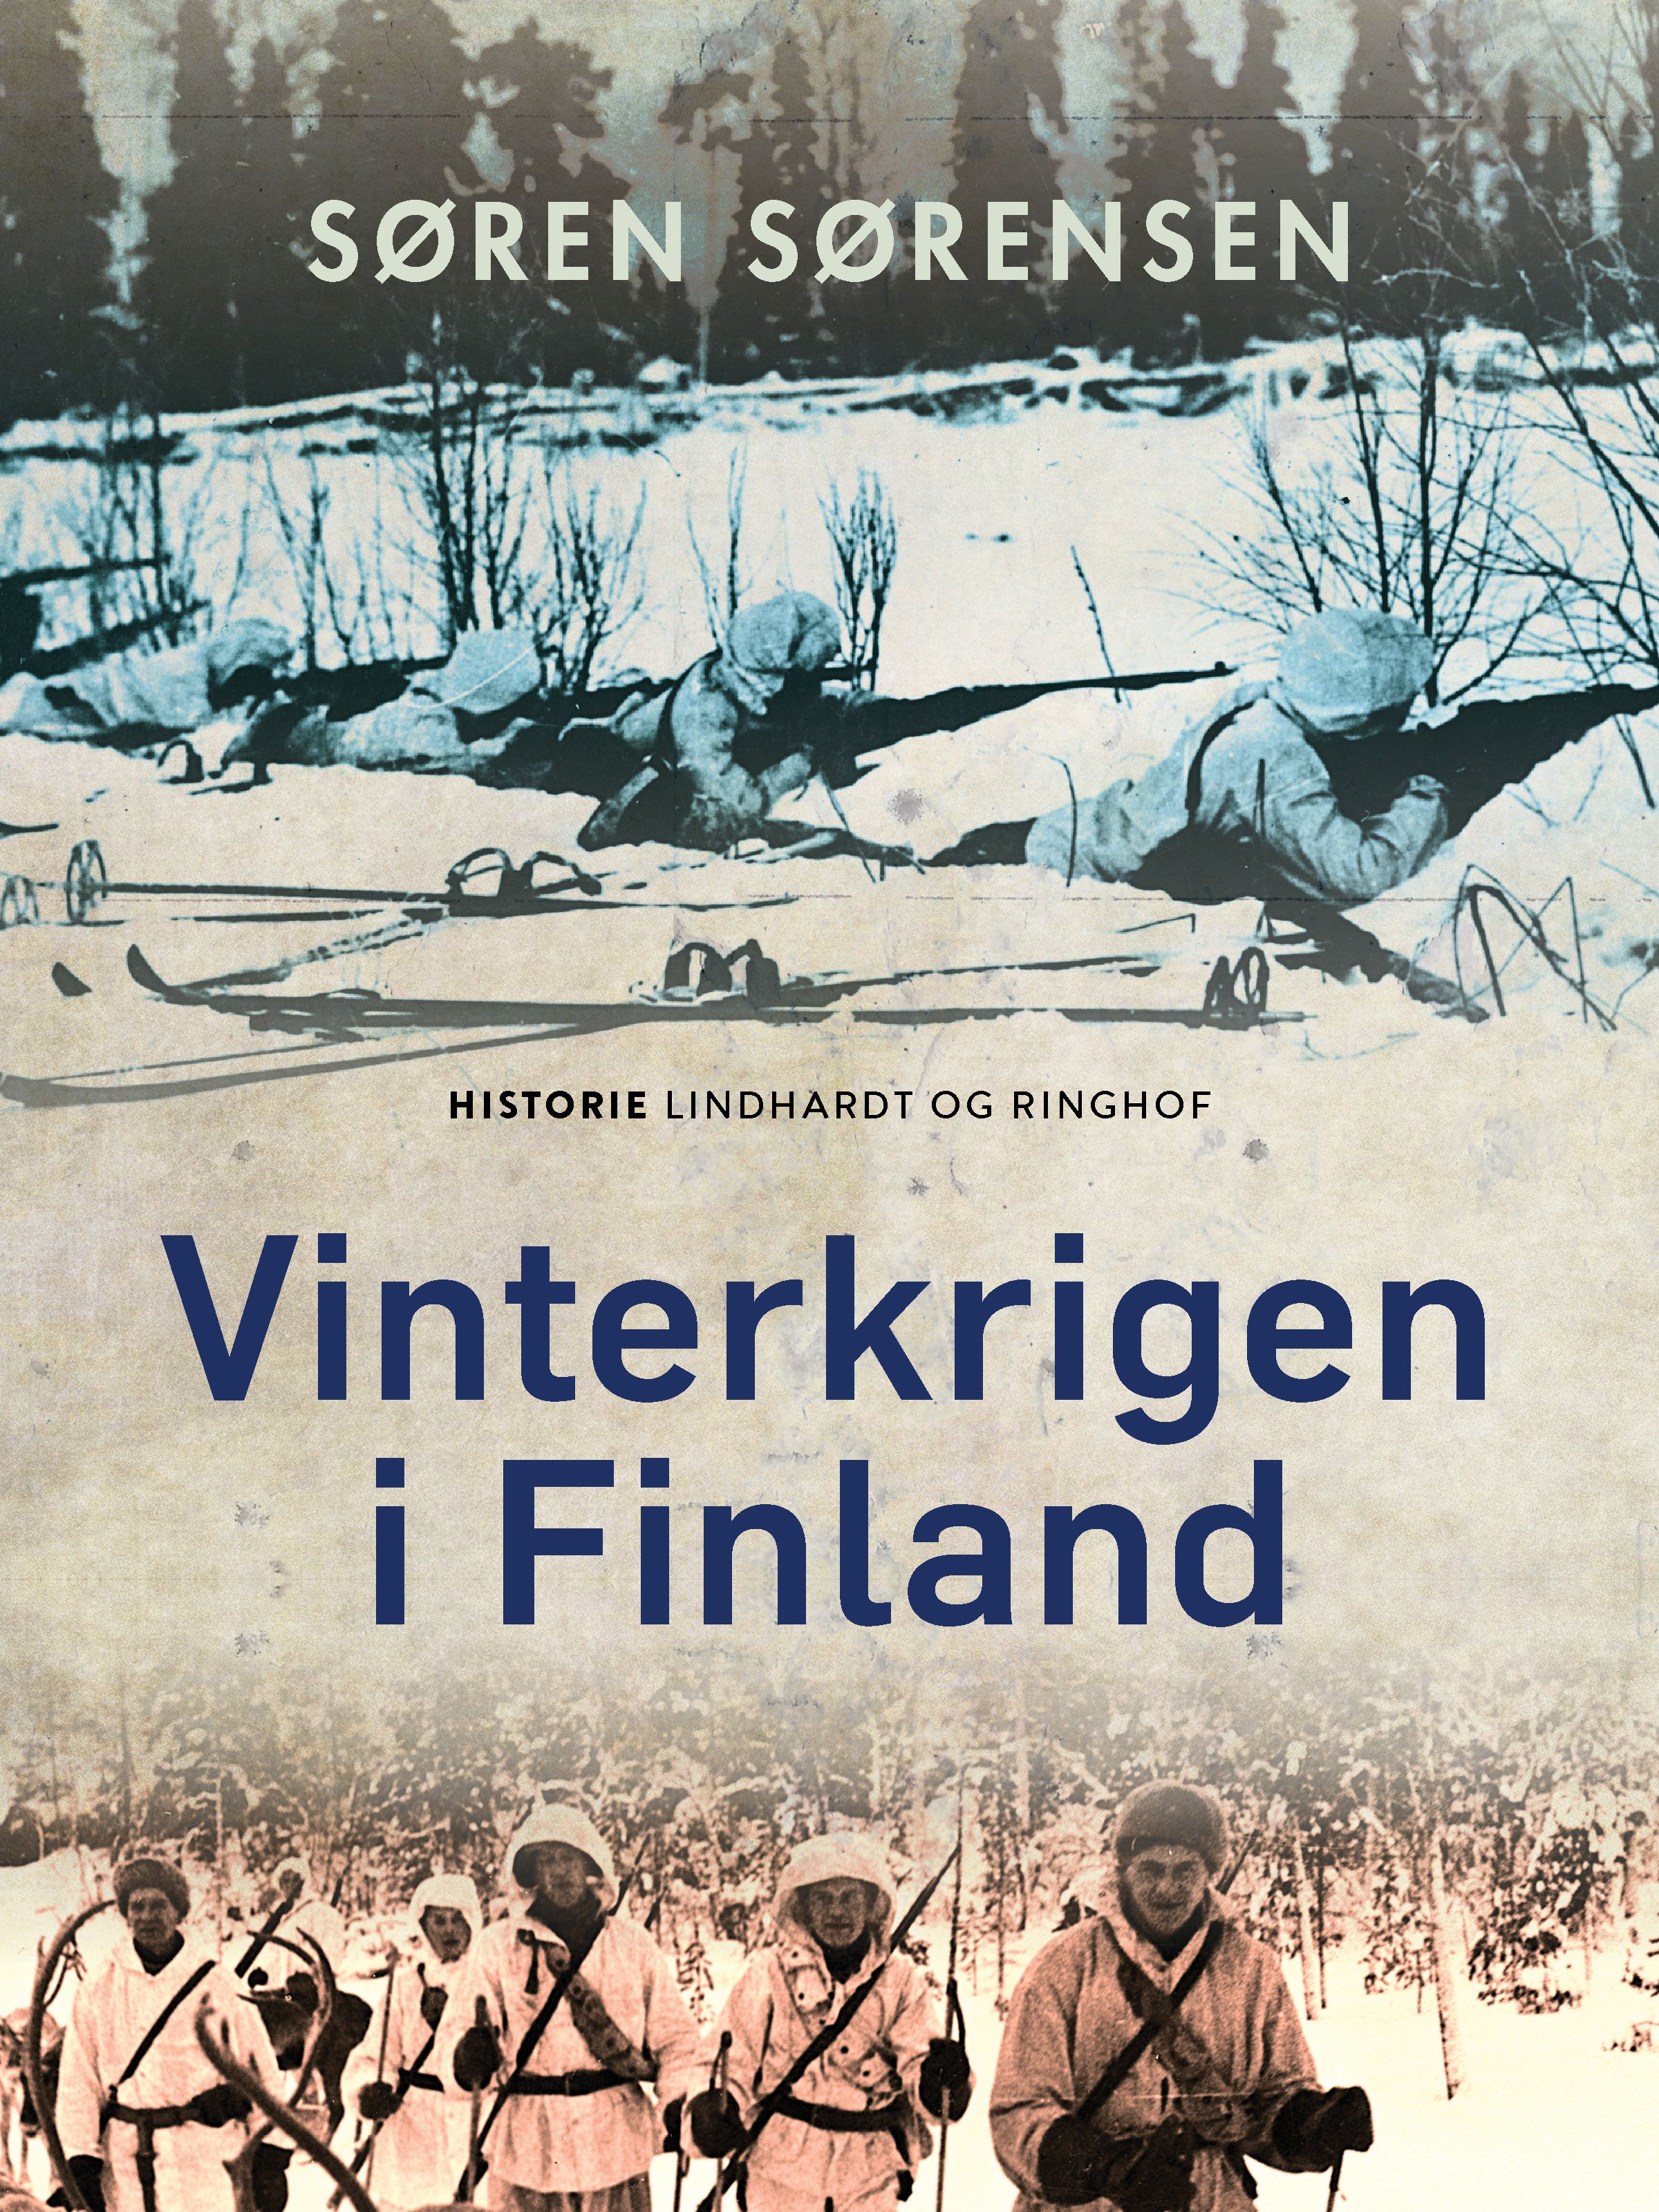 Vinterkrigen i Finland, e-bok av Søren Sørensen